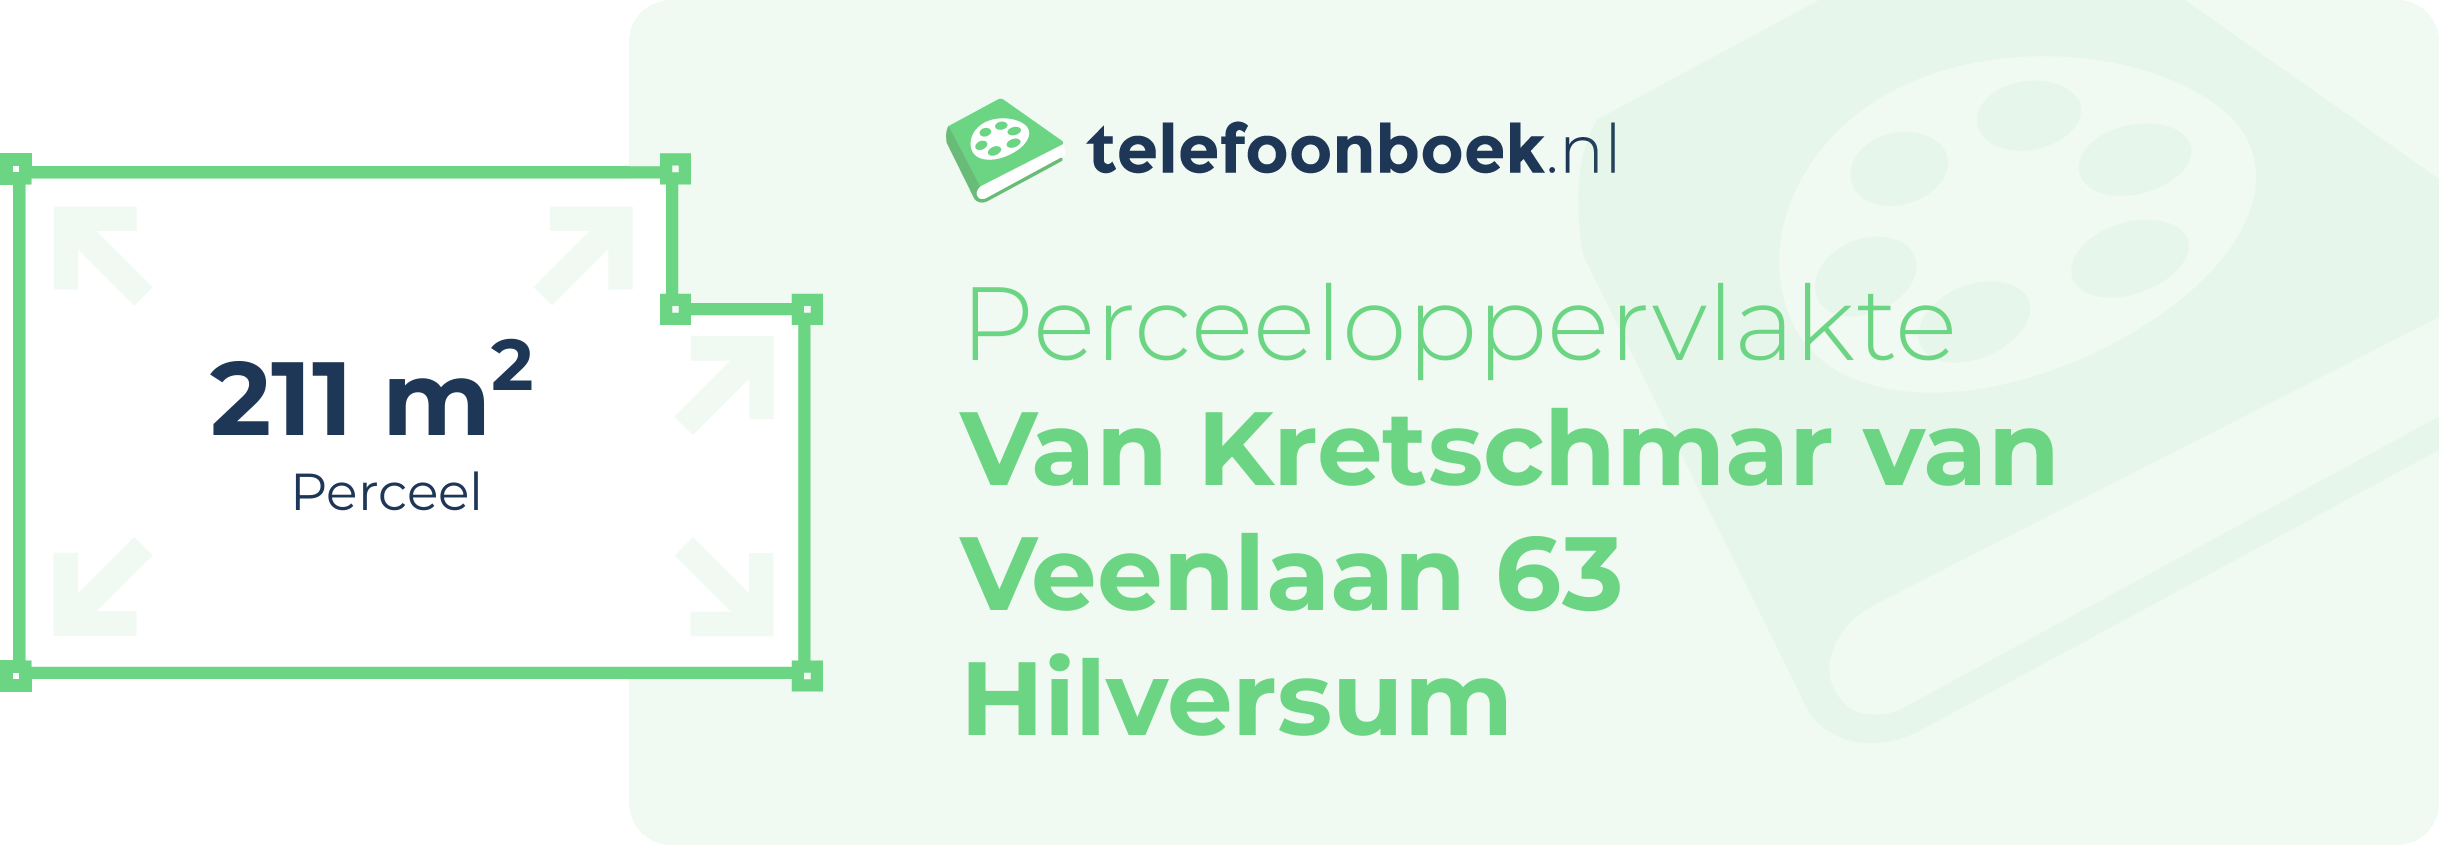 Perceeloppervlakte Van Kretschmar Van Veenlaan 63 Hilversum